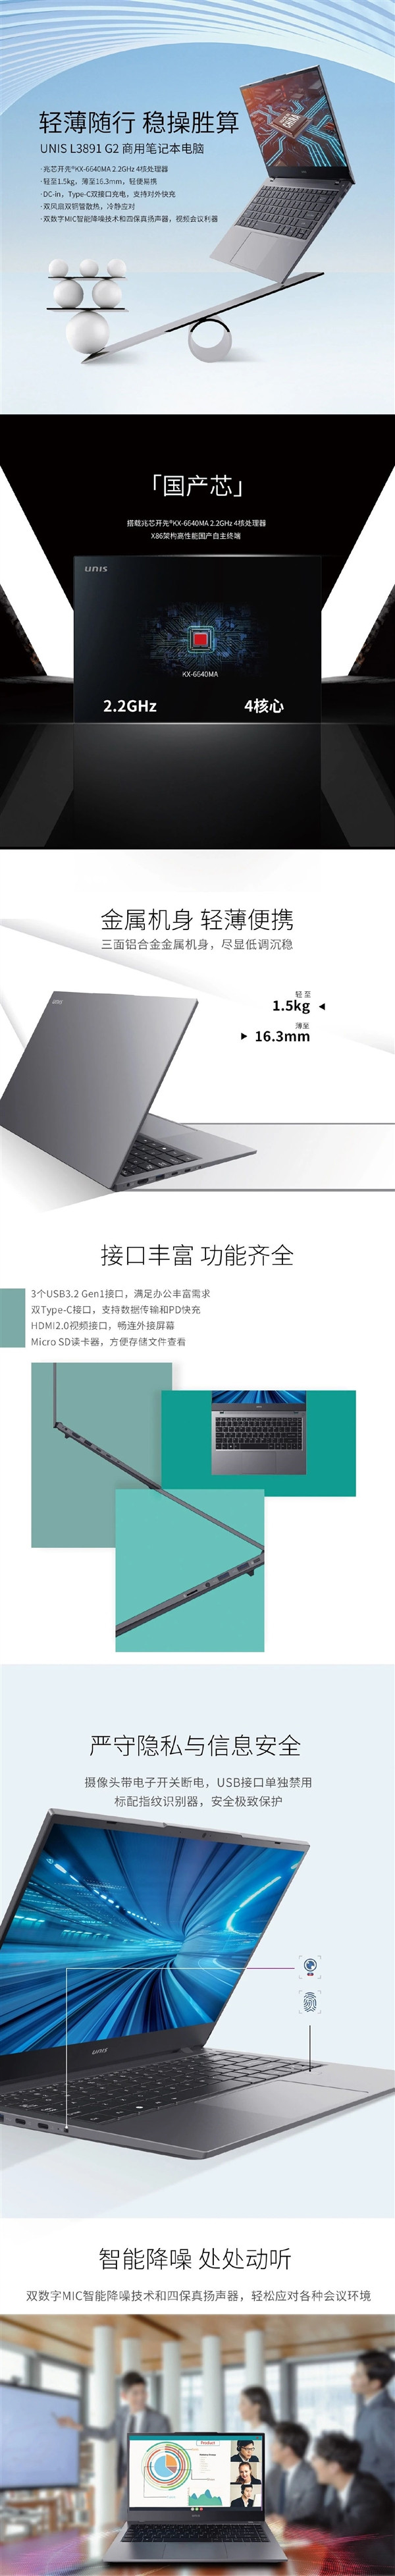 国产化率超 85%：紫光 Unis L3891 商用笔记本发布，搭兆芯x86处理器，麒麟/统信系统